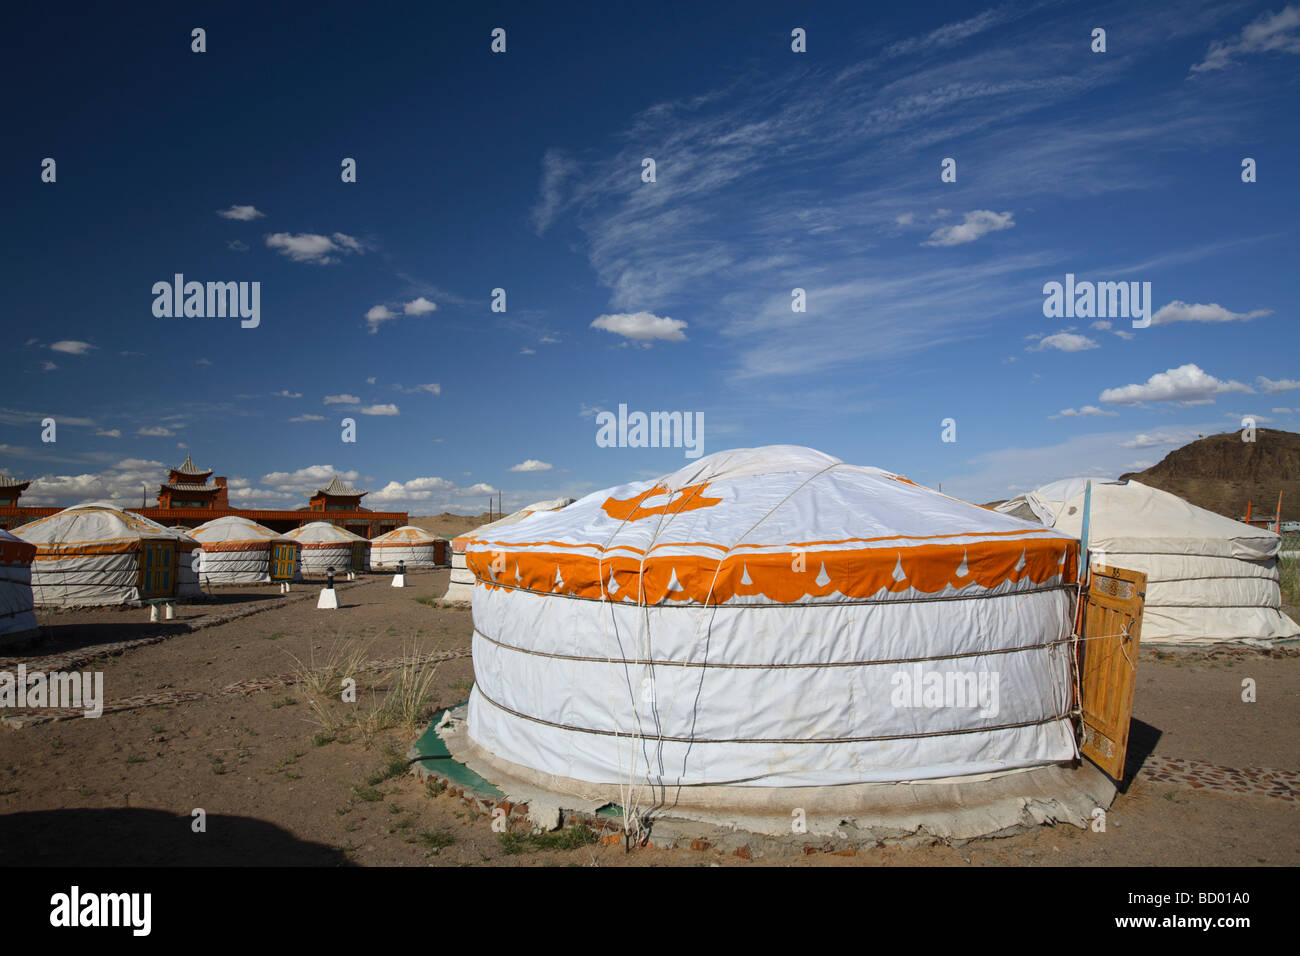 Traditionelle Gers eine touristische camp, Wüste Gobi, Mongolei Stockfoto